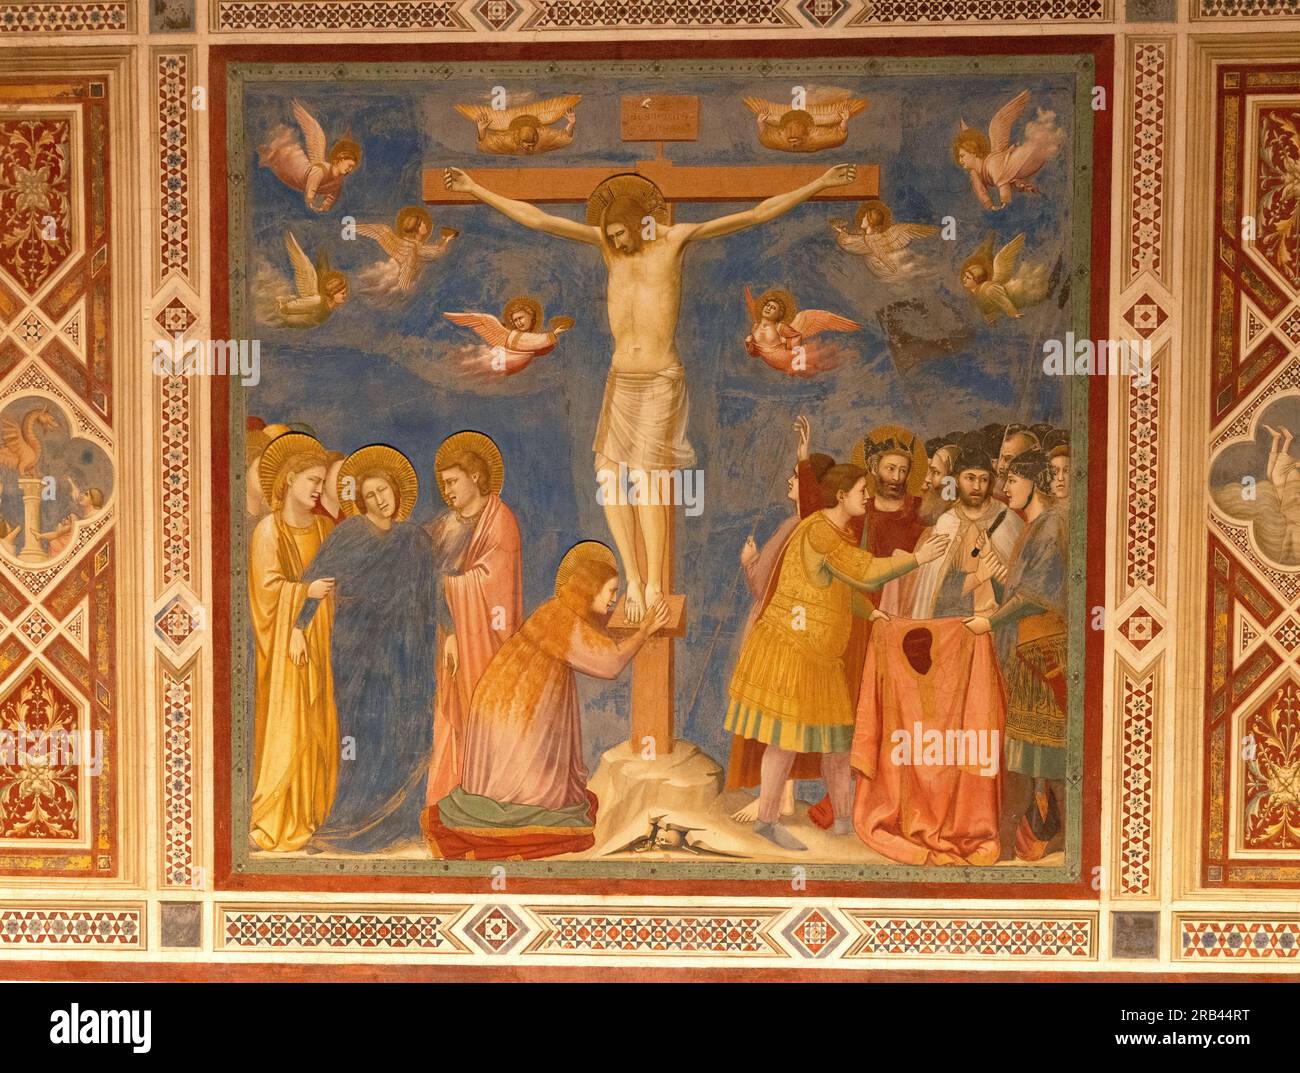 Giotto-Fresken, die Scrovegni-Kapelle, Padua Italien - italienische Renaissance-Gemälde des Lebens Christi; hier, 'Kreuzigung Christi'; - Kunstgeschichte Stockfoto